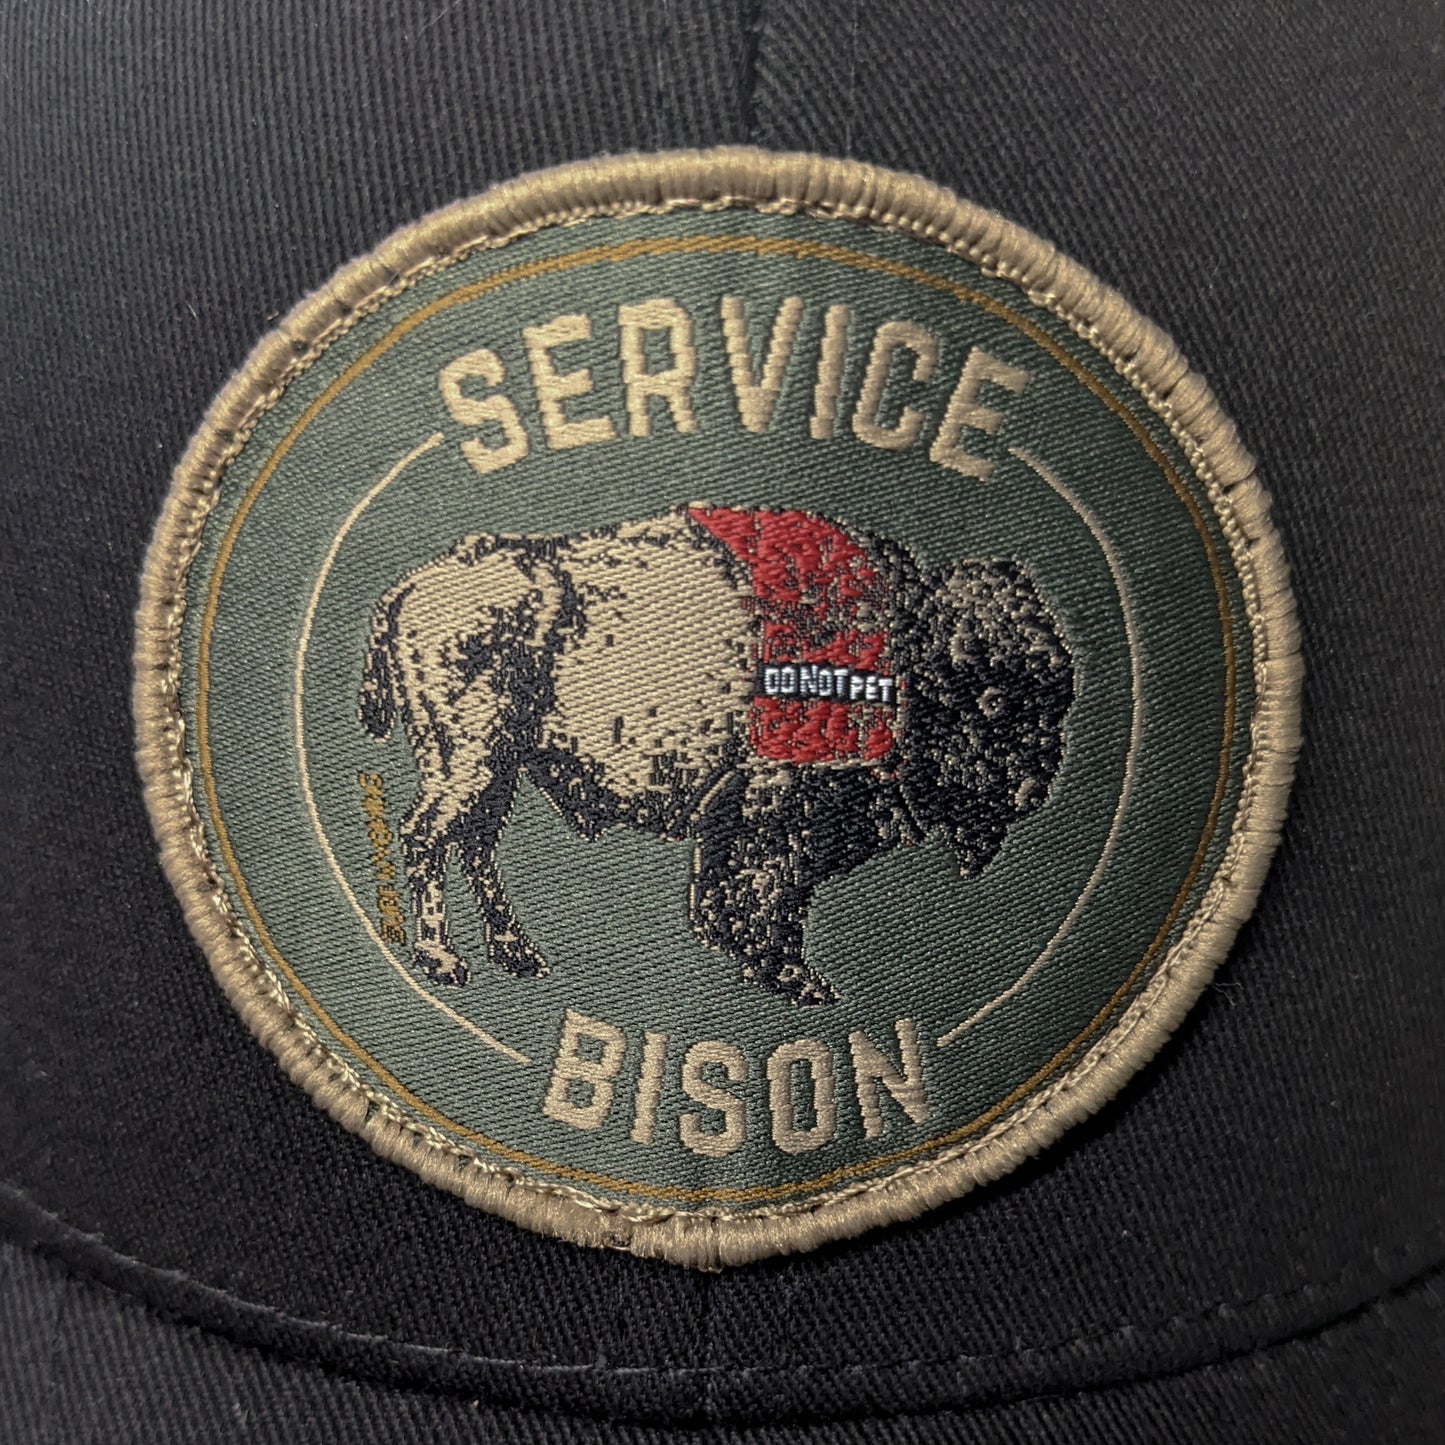 Surf Wyoming® Service Bison Trucker Hat - Black